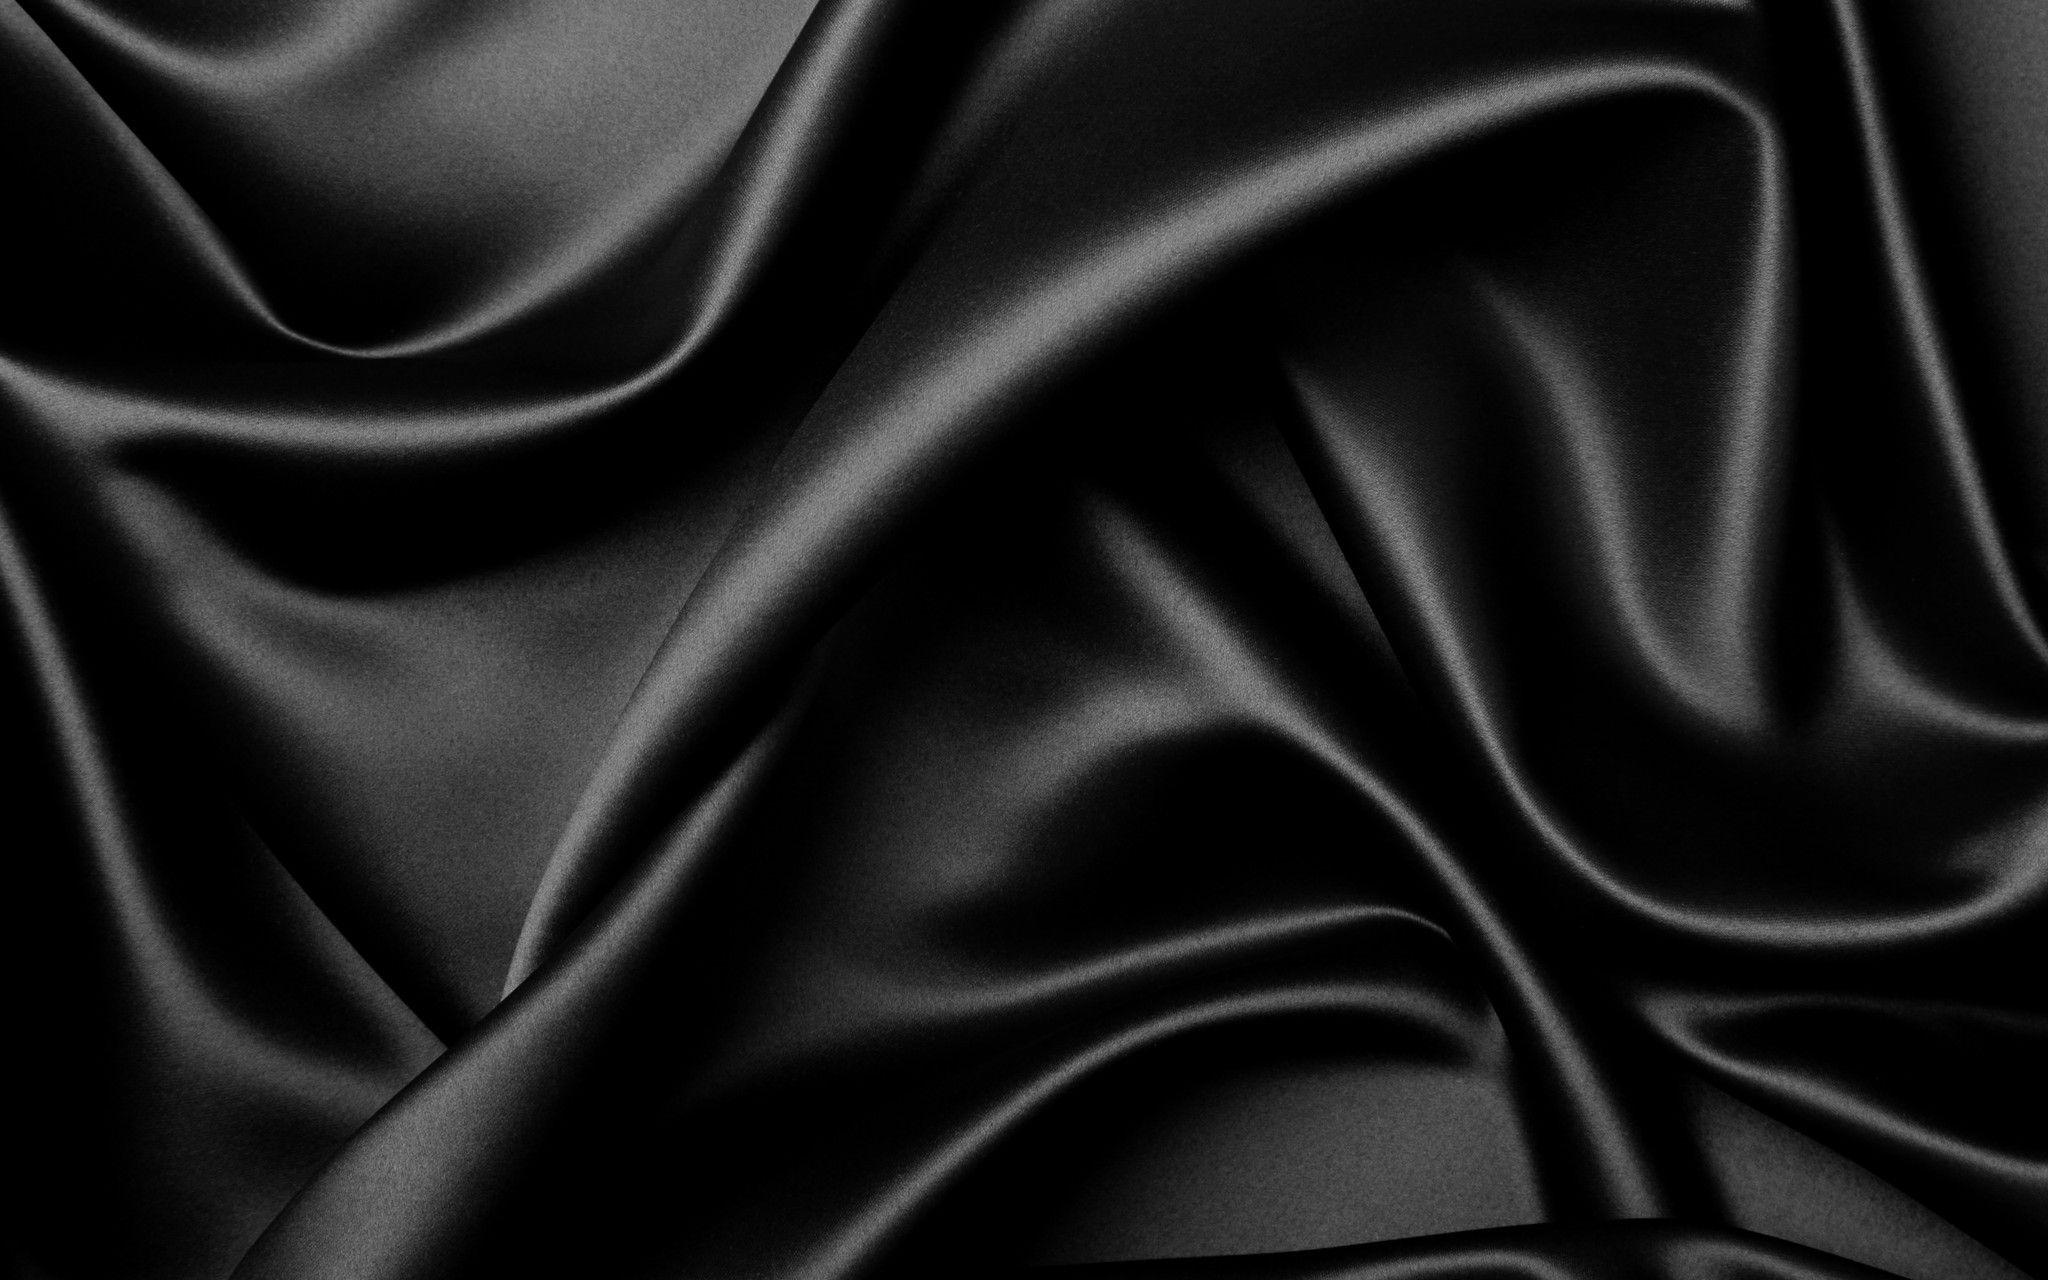 Nền tảng lụa đen là nền tảng hoàn hảo để làm nổi bật sự quý phái và thanh lịch của bạn. Xem hình ảnh để cảm nhận sự khác biệt mà nền tảng lụa đen có thể mang lại cho không gian của bạn.